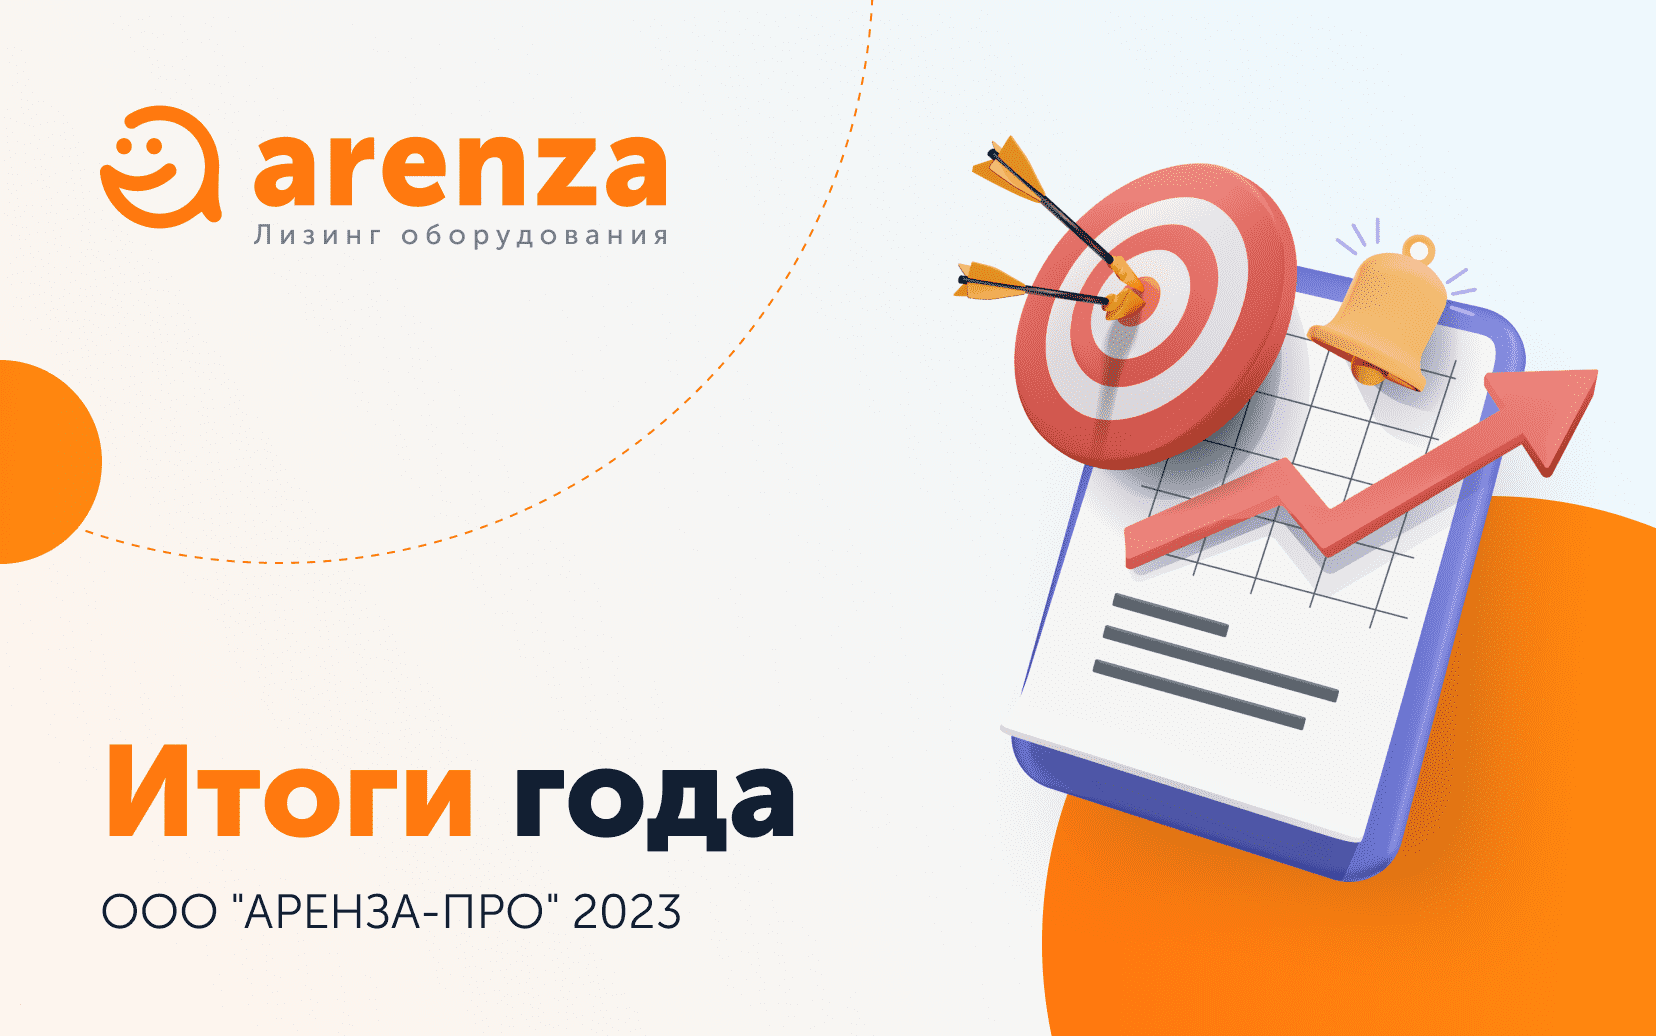 Arenza - итоги финансовой деятельности 2023.